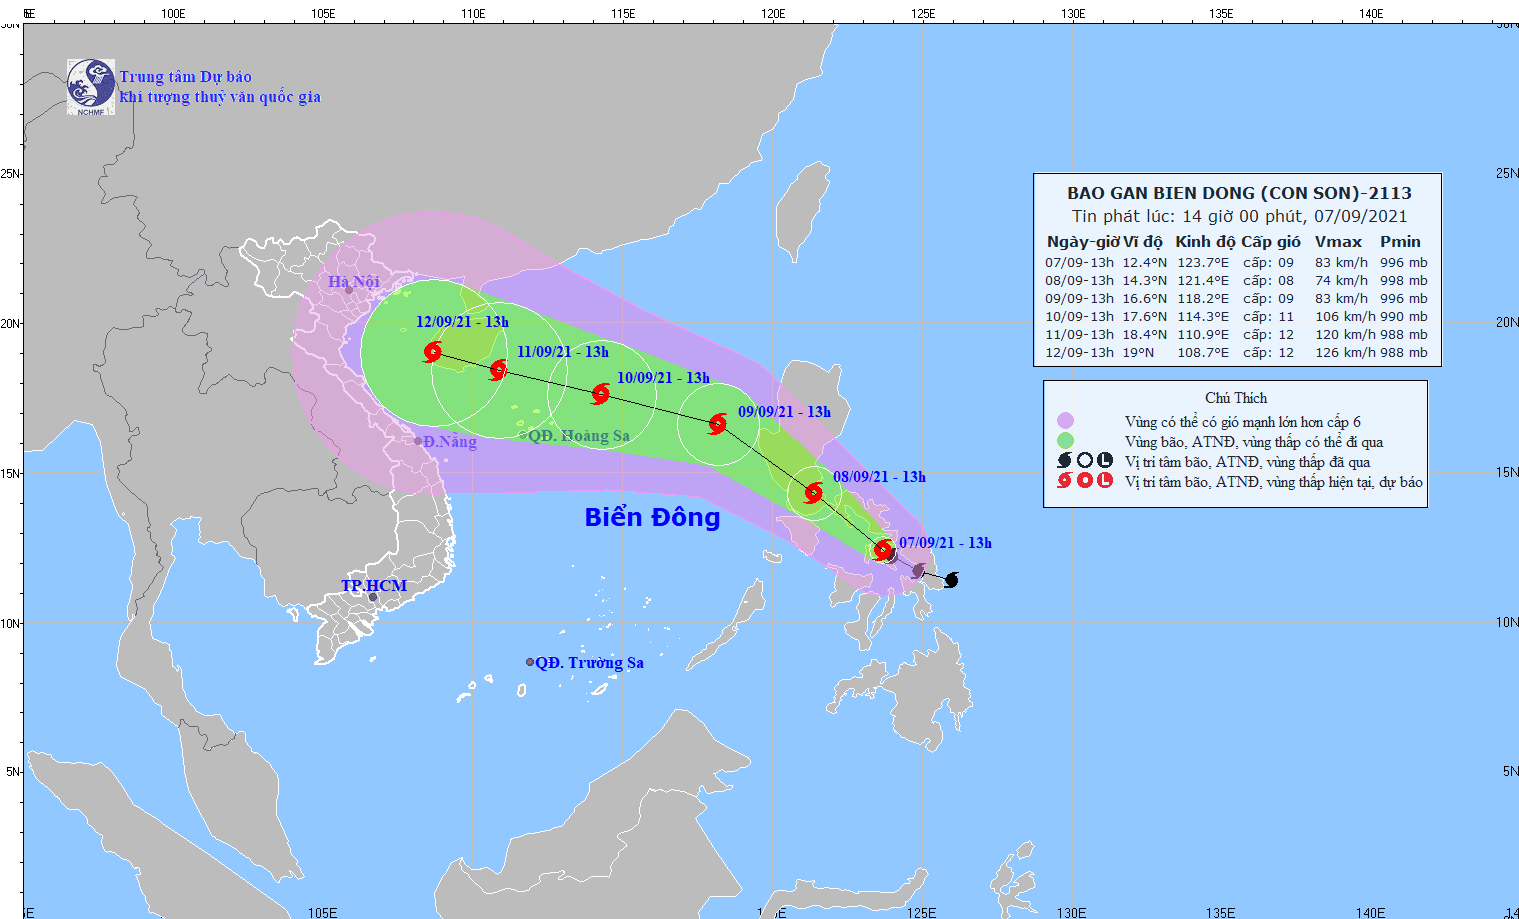 Xuất hiện bão Conson gần Biển Đông